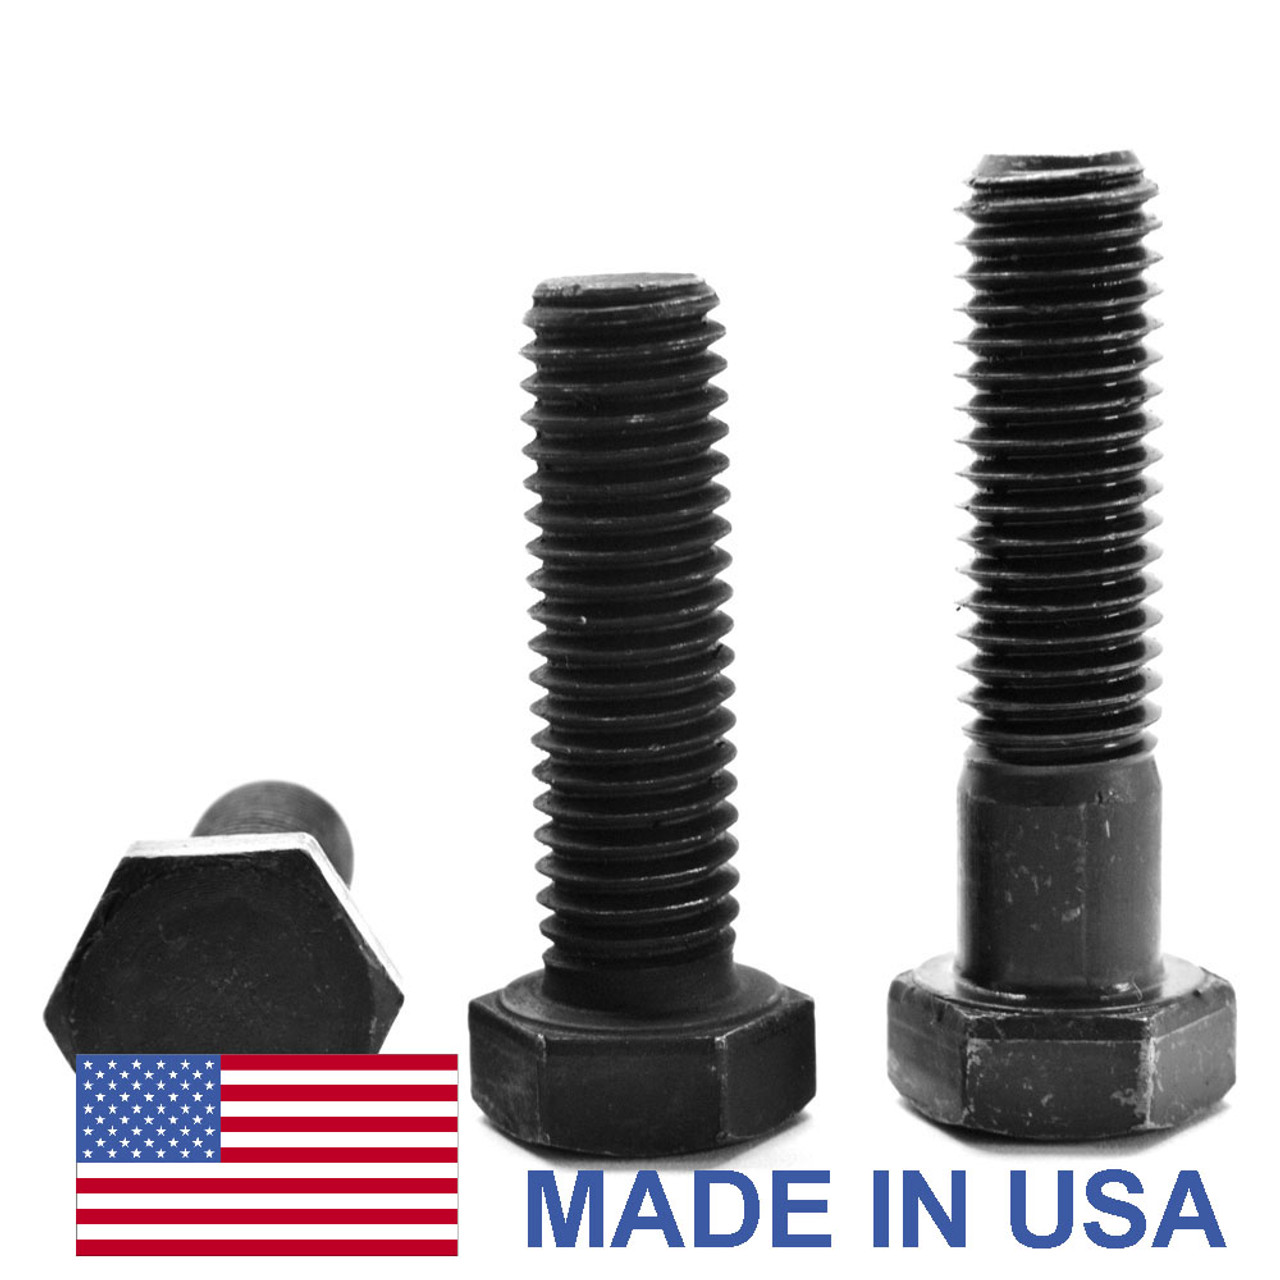 1"-14 x 2 3/4" (FT) UNS Thread Grade 5 Hex Cap Screw (Bolt) - USA Medium Carbon Steel Black Oxide